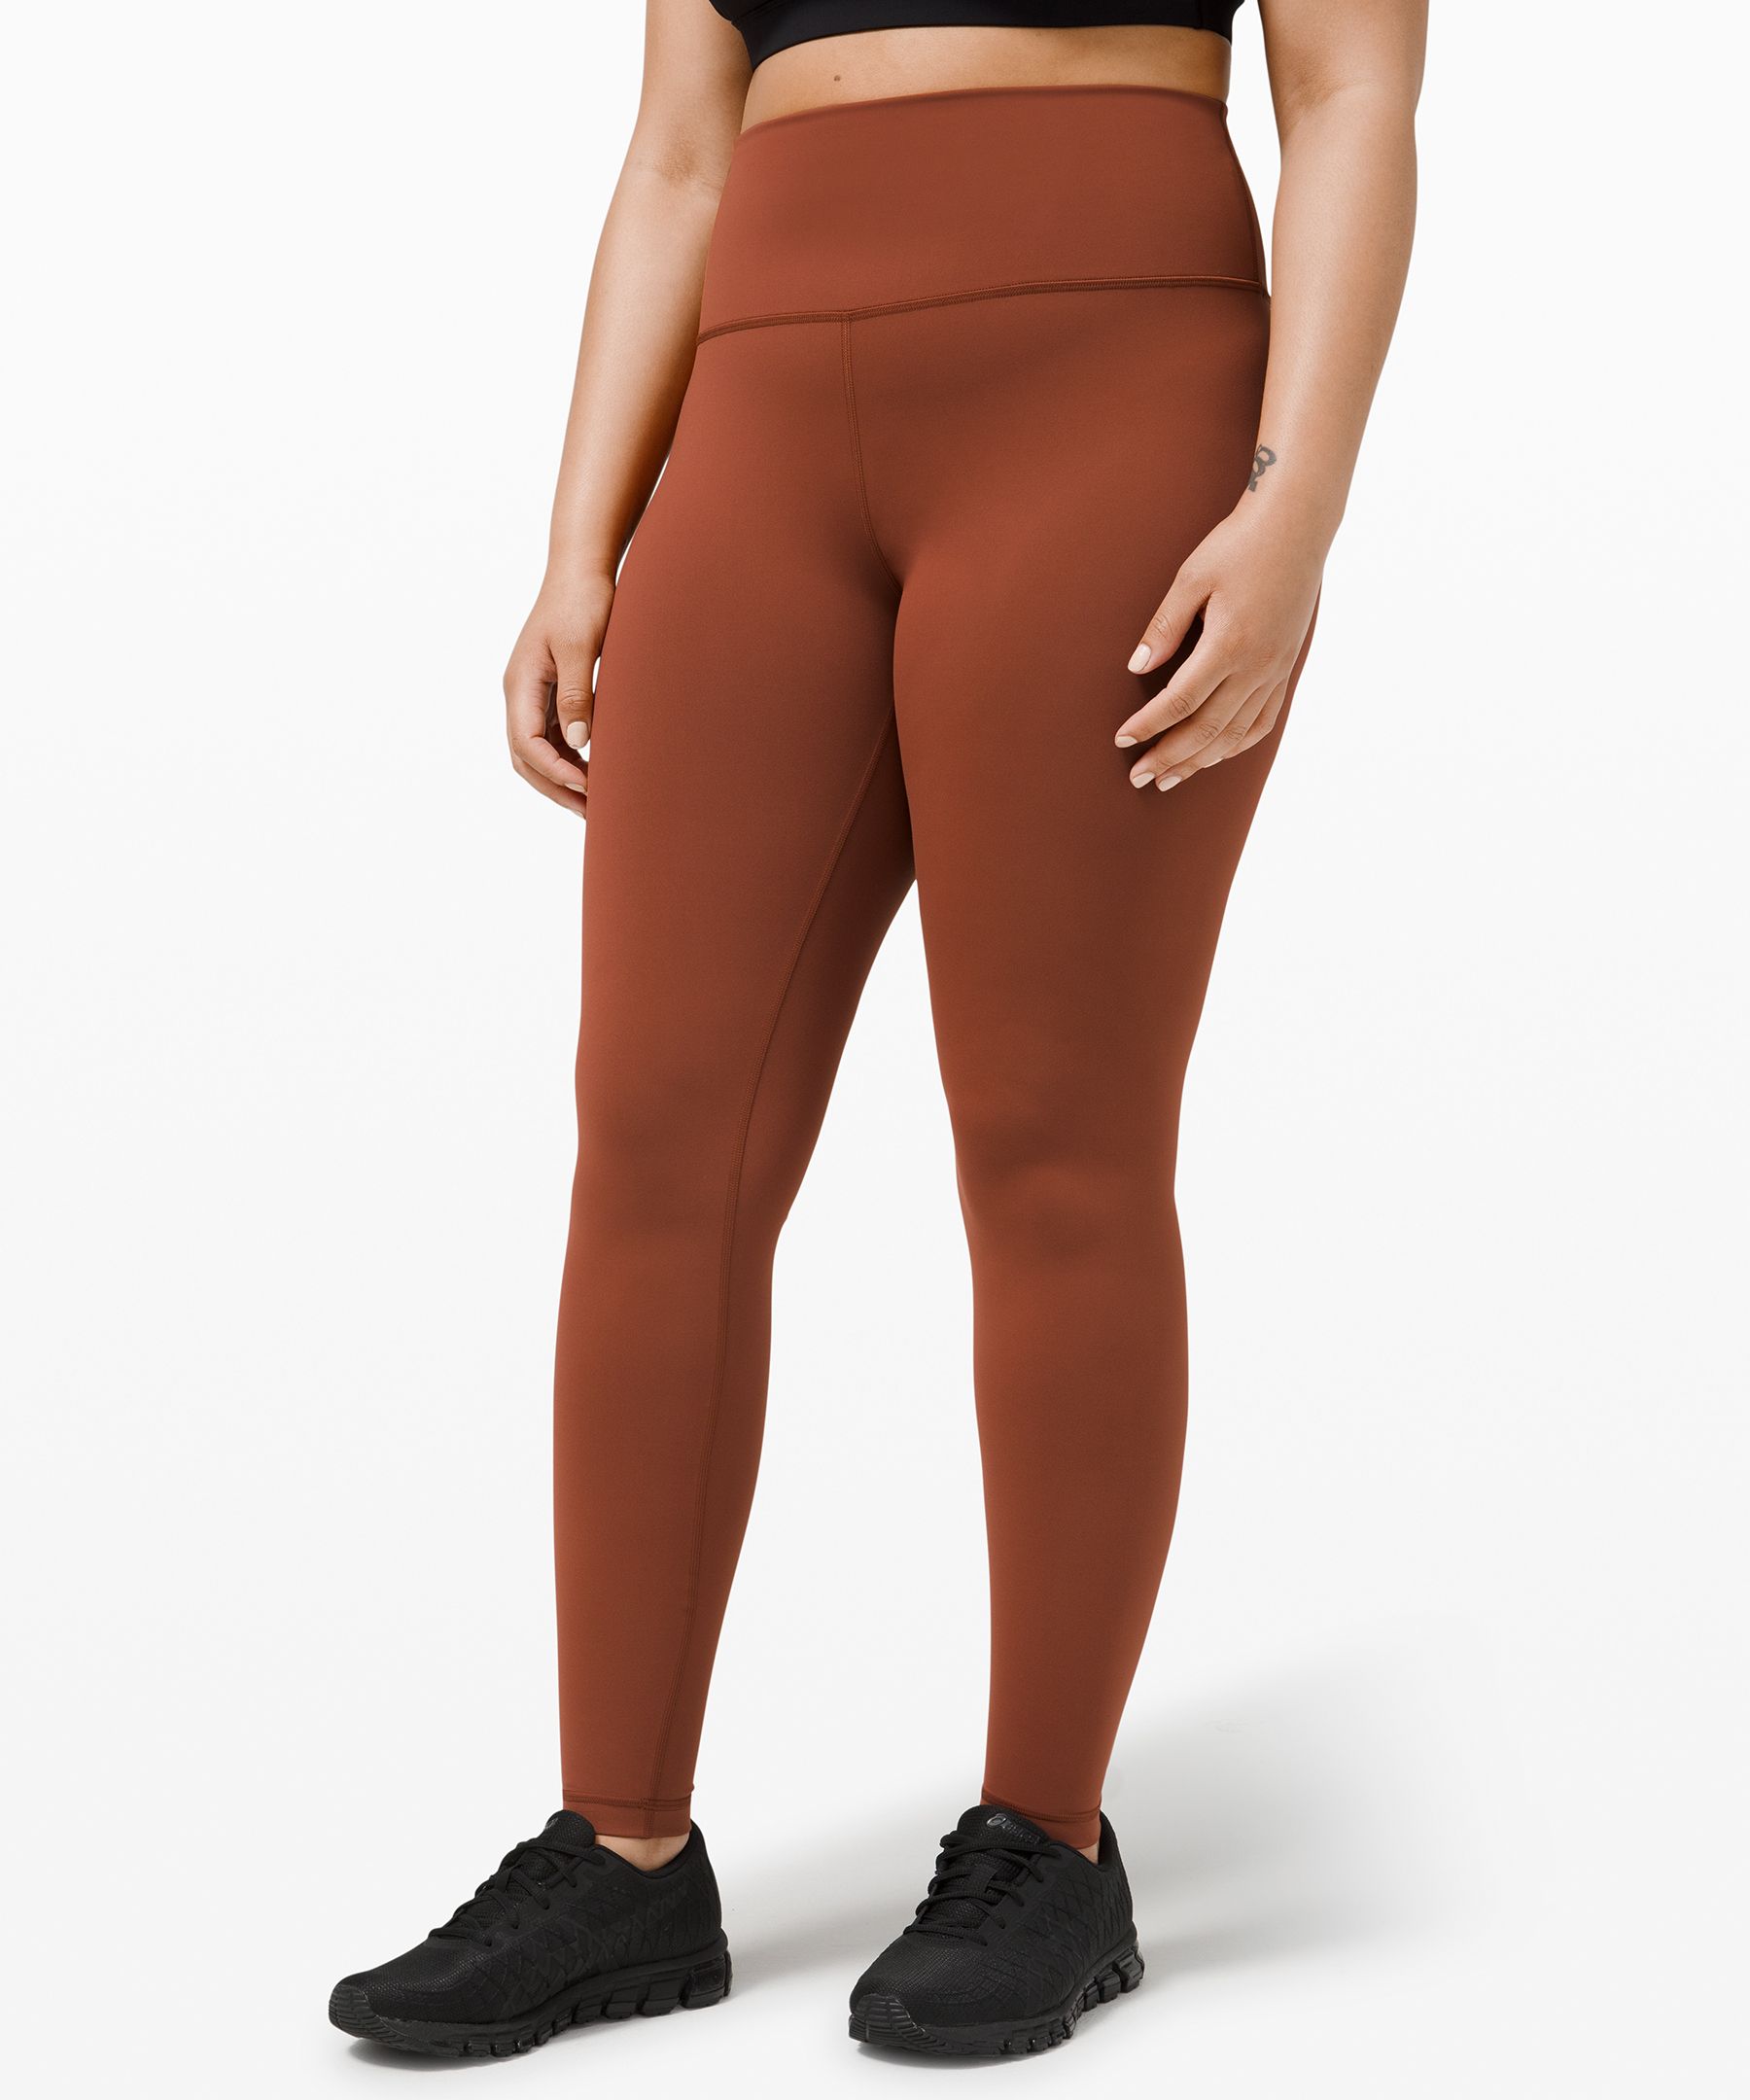 brown lululemon leggings